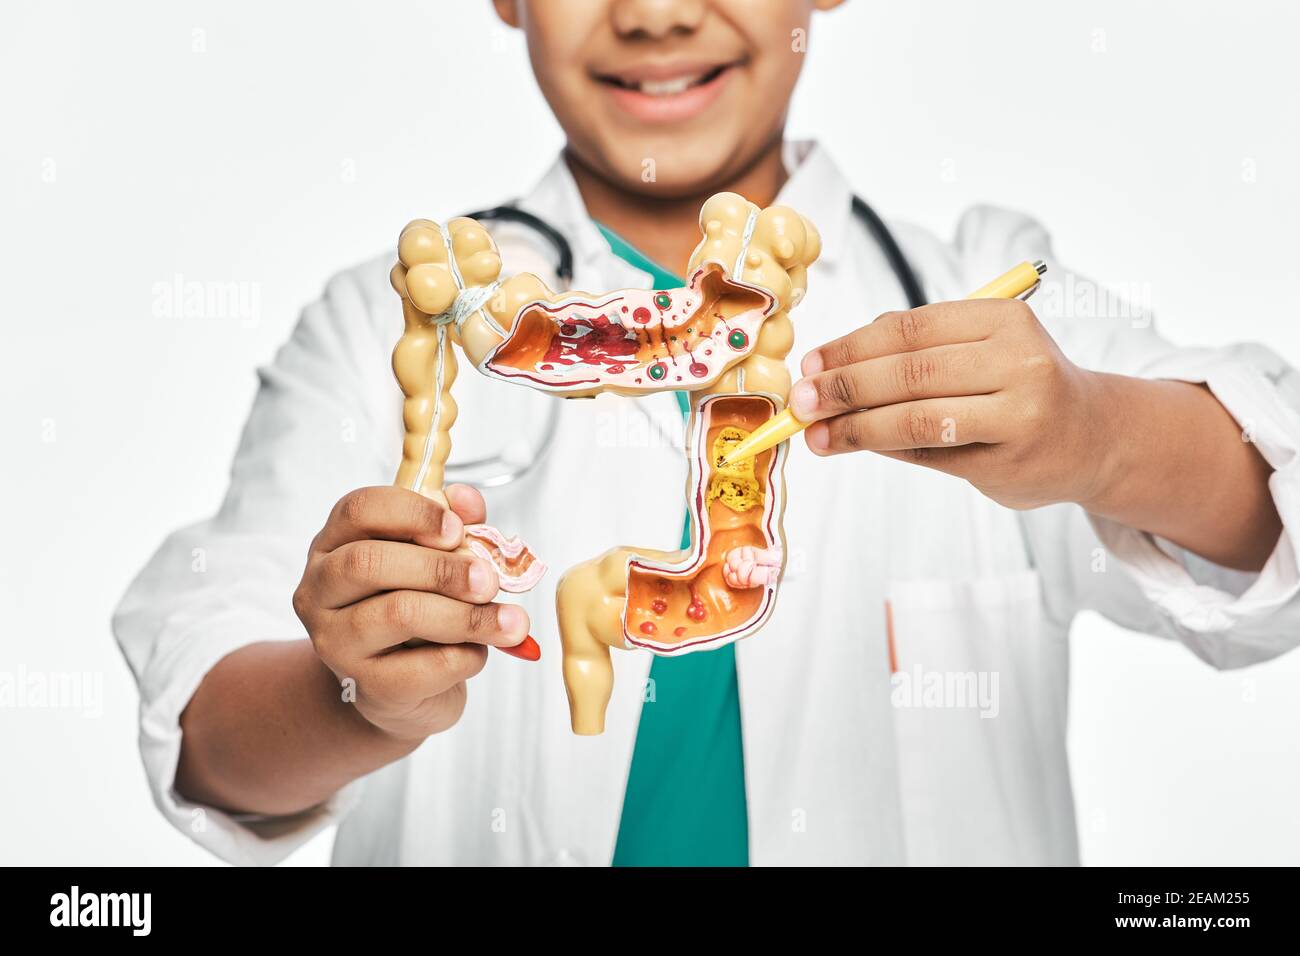 Modèle anatomique des intestins dans les mains de l'enfant, gros plan. Garçon pointant le stylo vers une pathologie des intestins. Étudier l'anatomie et la biologie humaines à l'école Banque D'Images